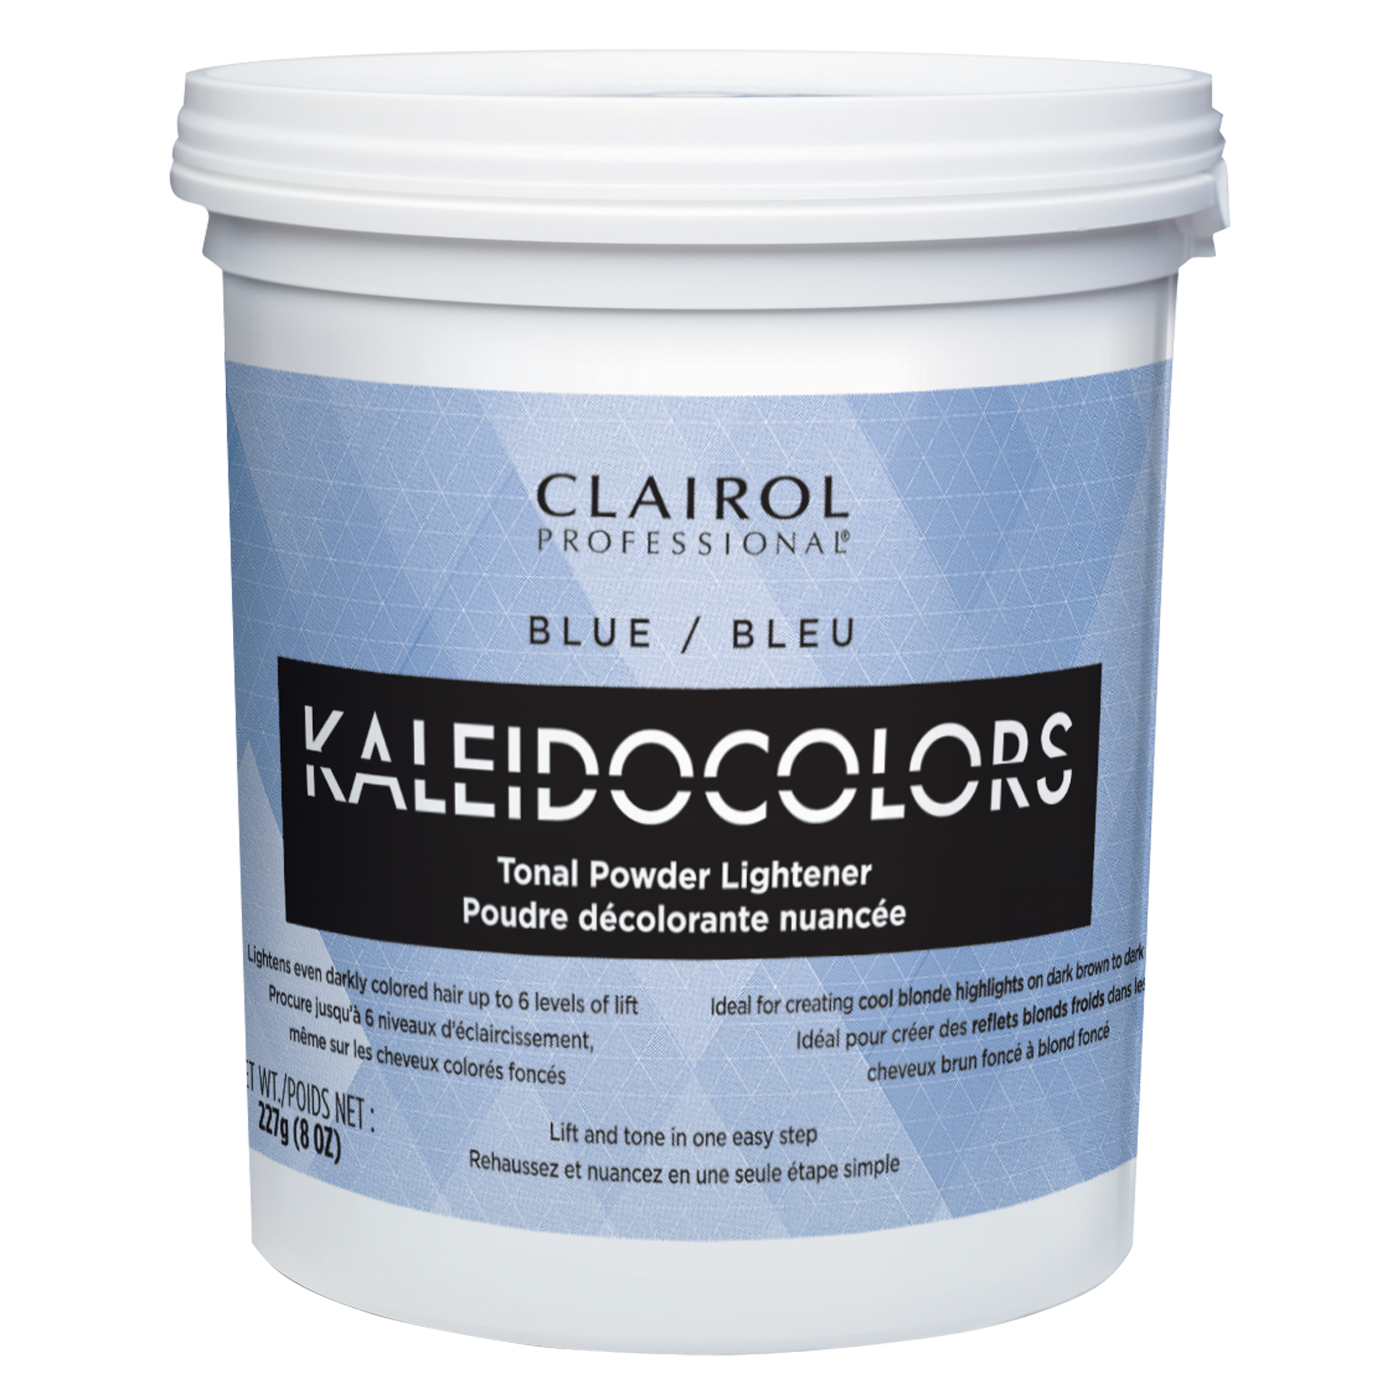 Kaleidocolors Tonal Powder Lightener, Blue Powder